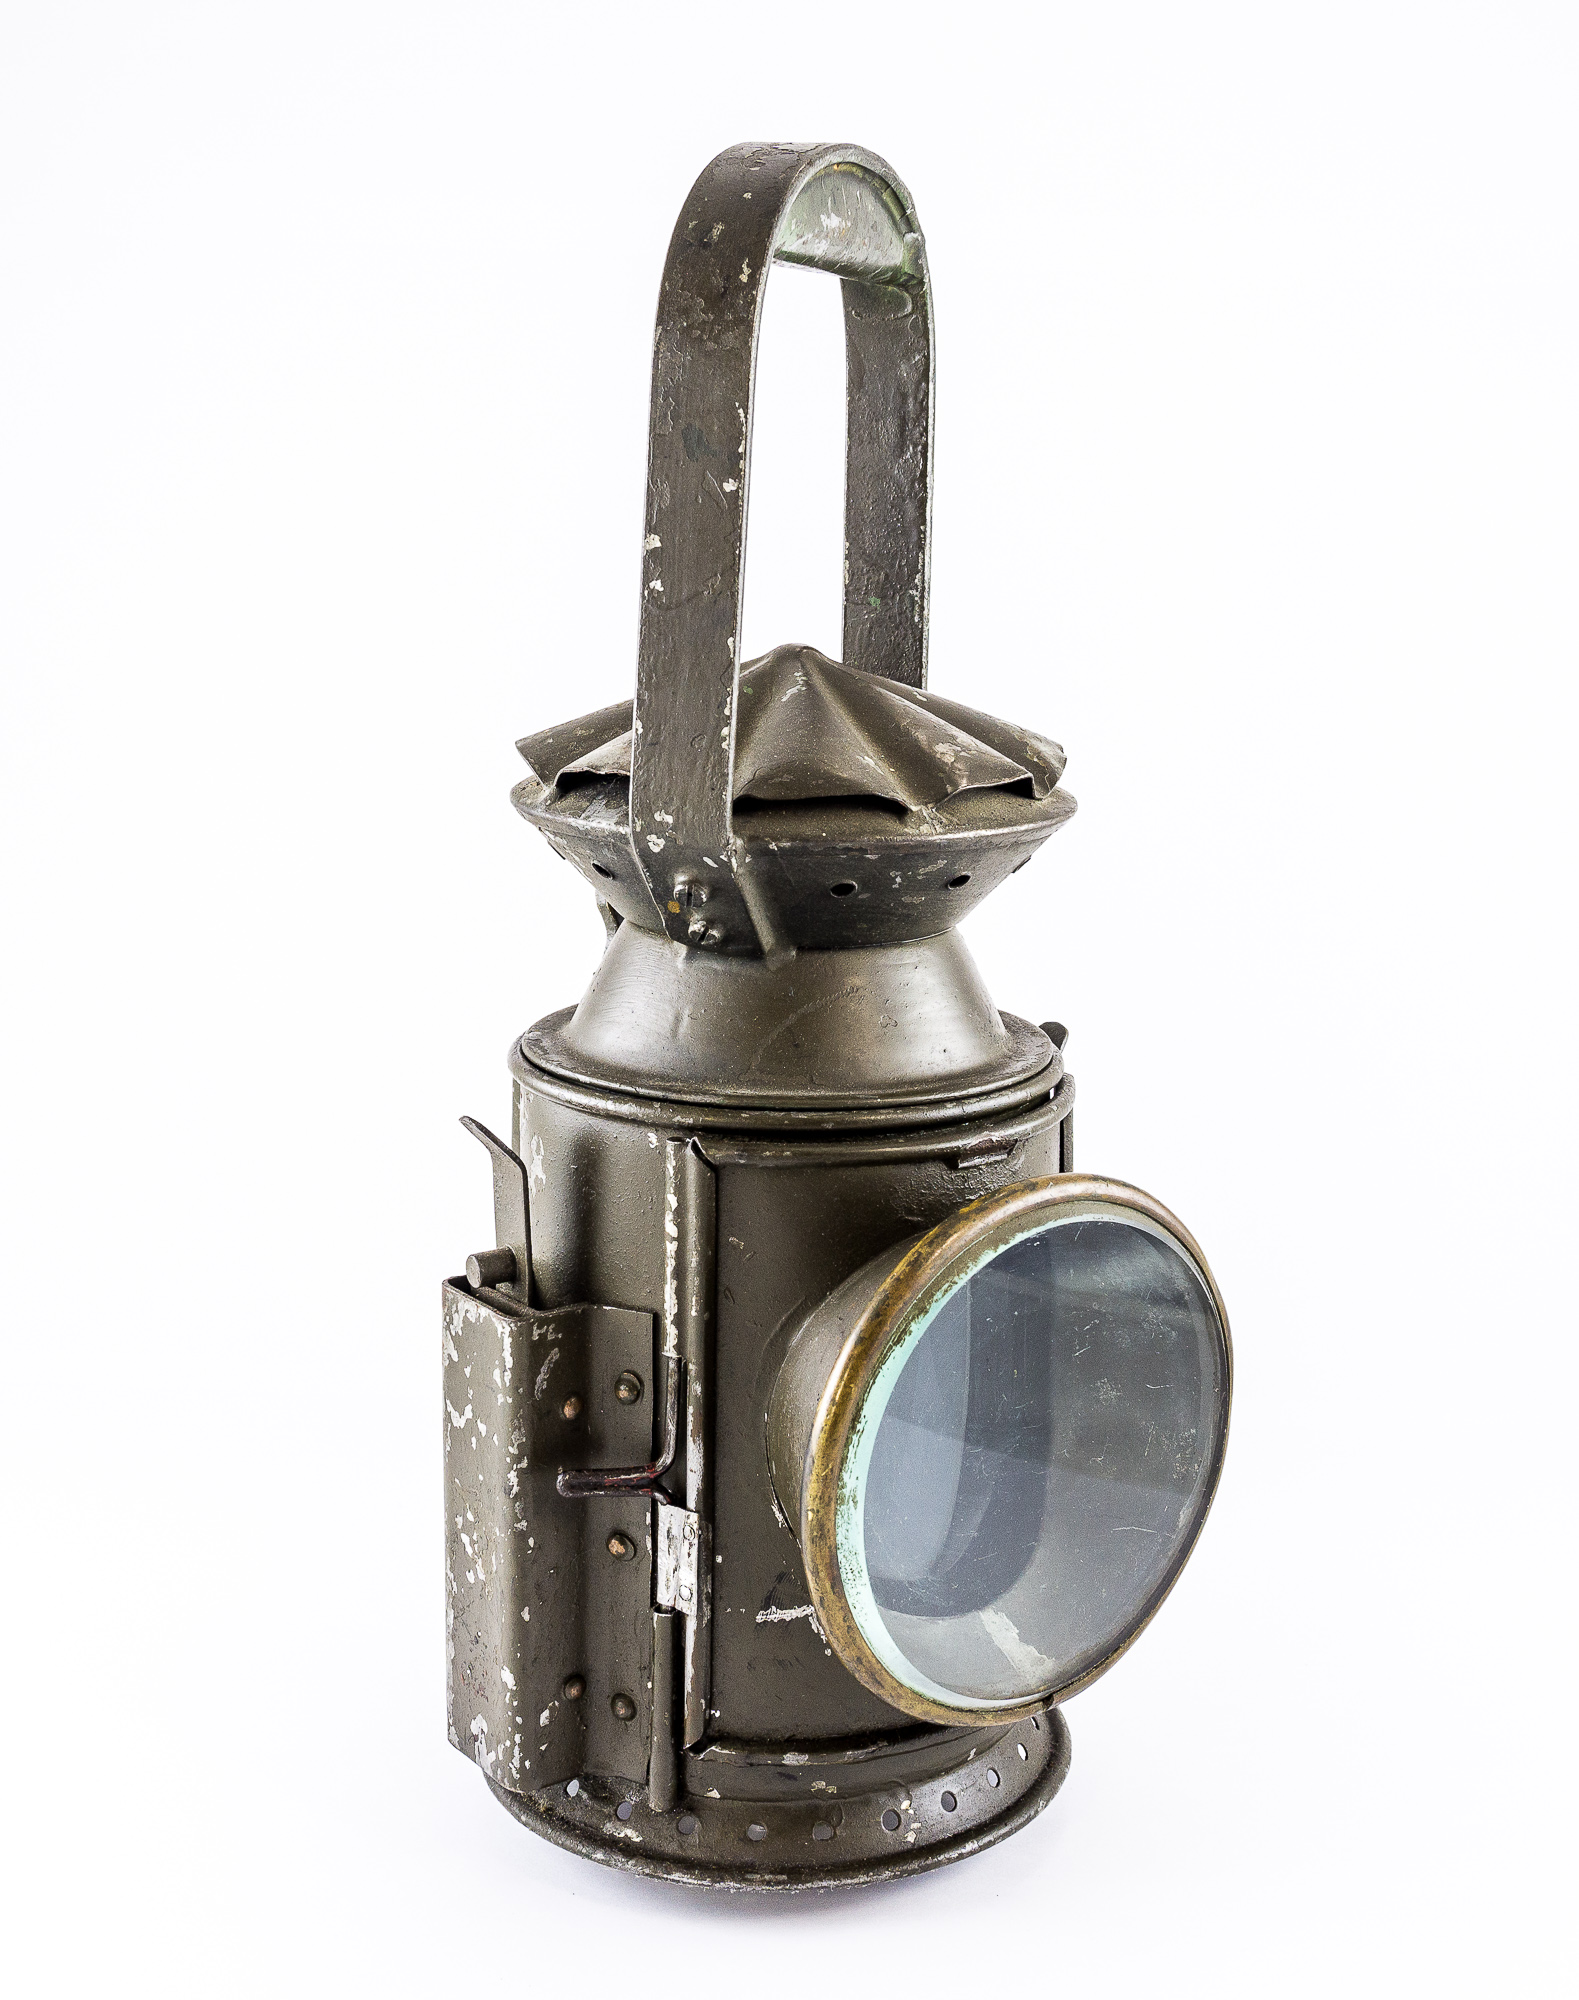 Железнодорожный сигнально-осветительный масляный фонарь, экспонат №208